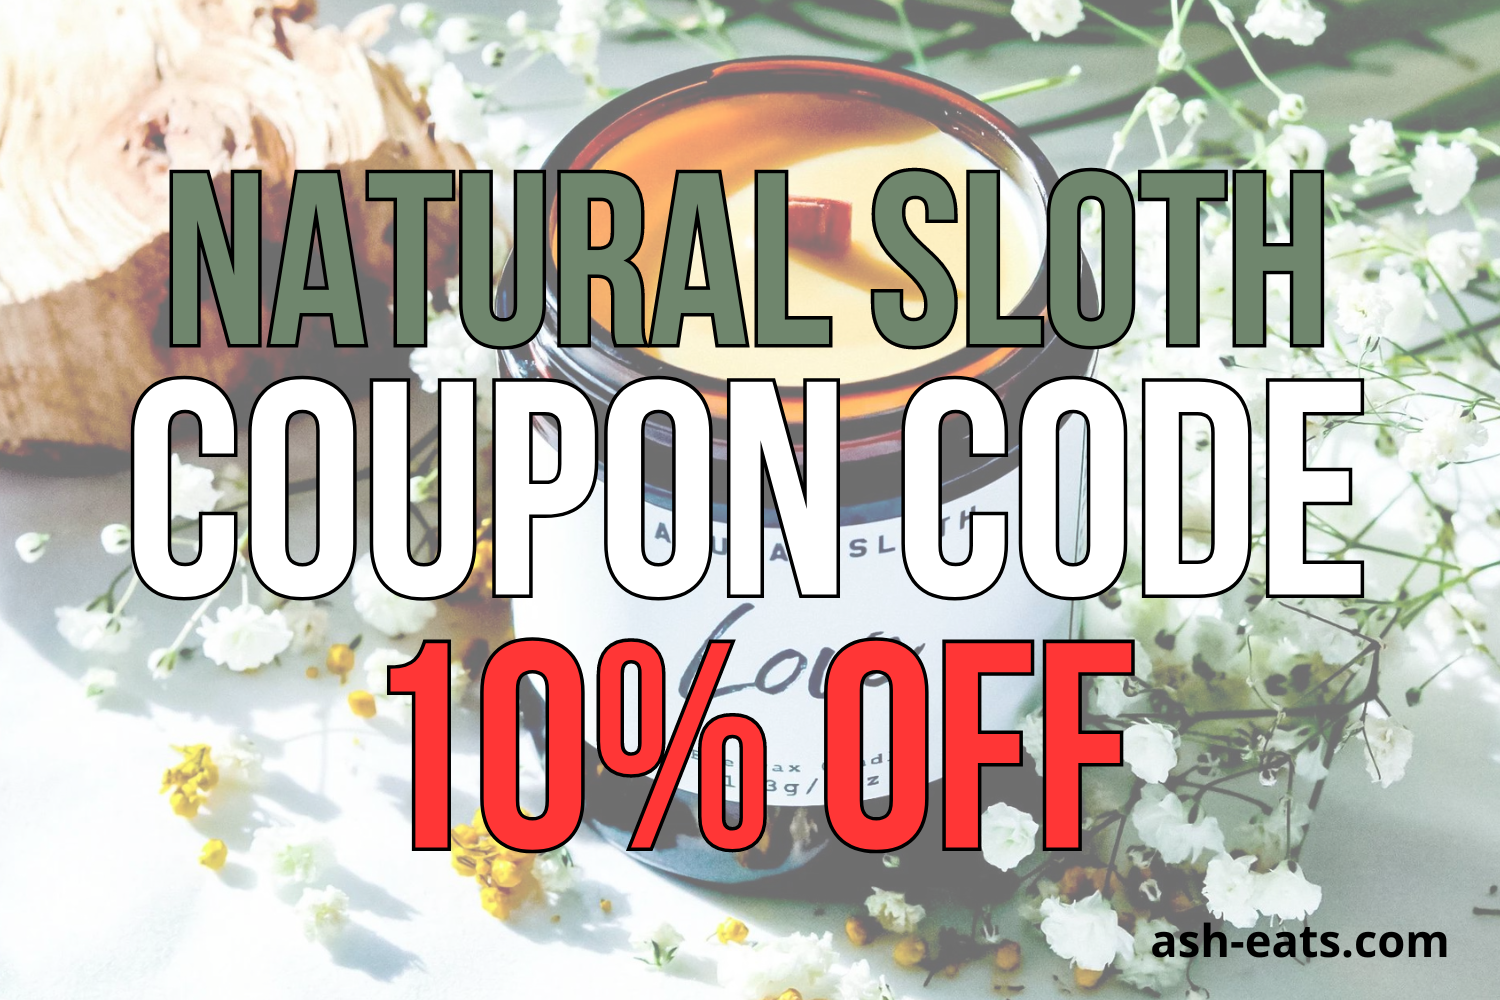 natural sloth coupon code